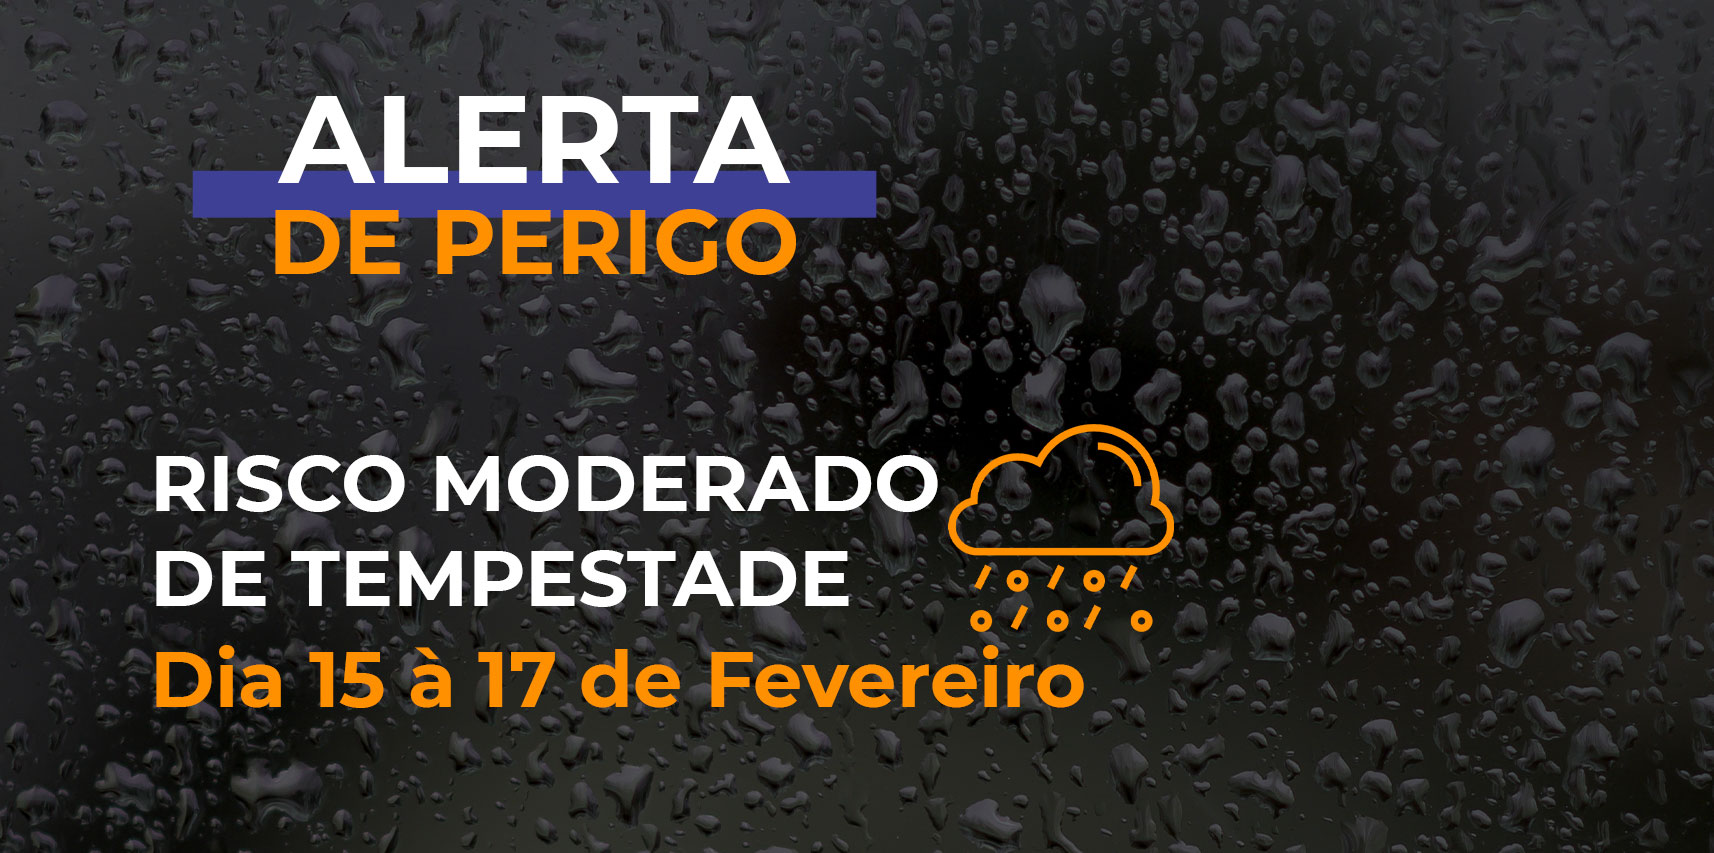 NOTÍCIA: Defesa Civil de Vargem Alta emite alerta para o risco moderado de tempestade para os próximos dias